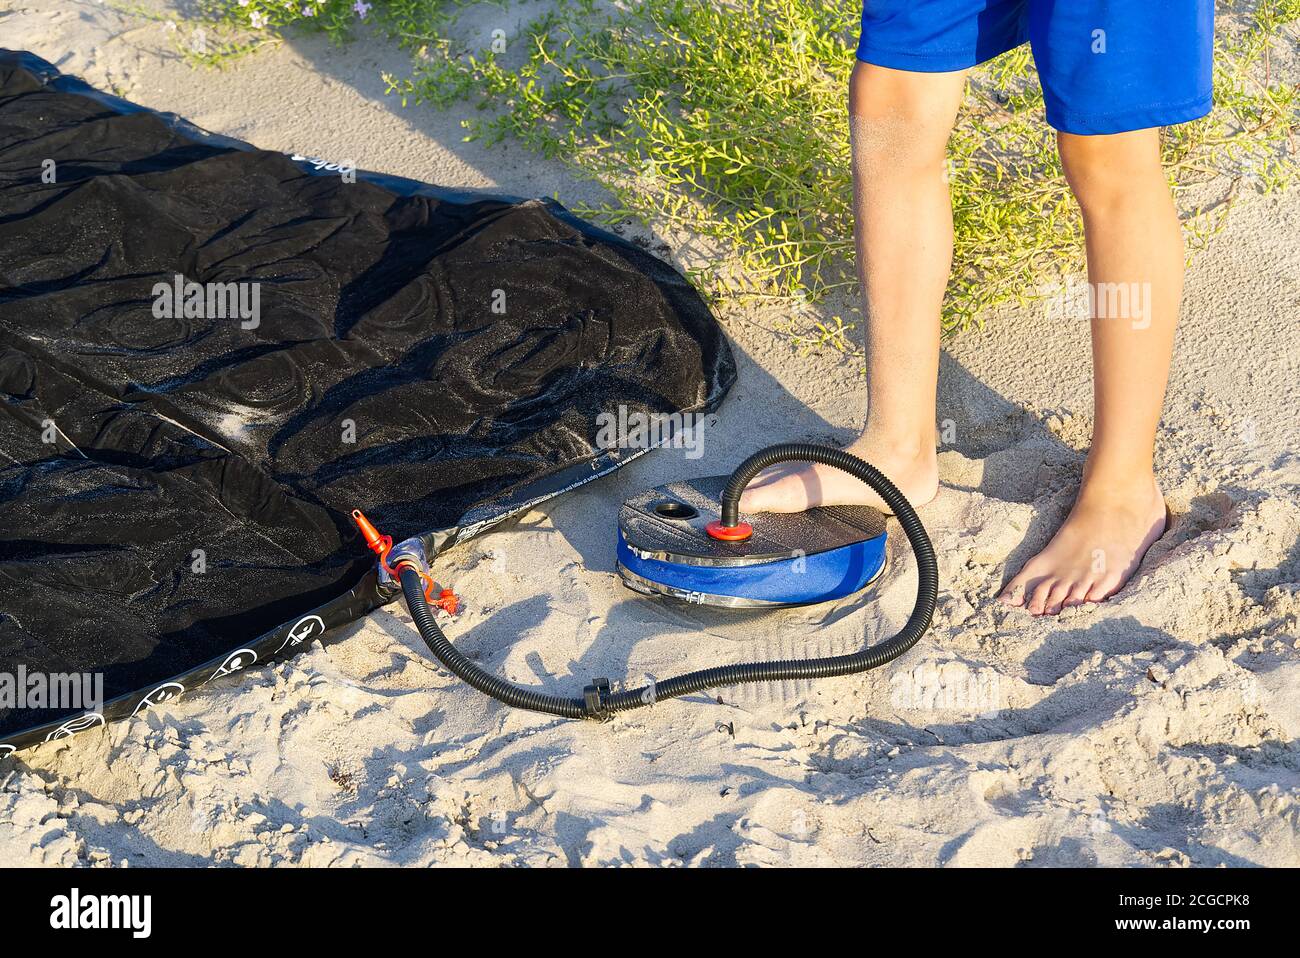 Un homme avec pompe à air à pied pompe un matelas gonflable ou un lit d'air  à la plage de sable. Le pied gonfle le matelas pneumatique avec la pompe à  pied